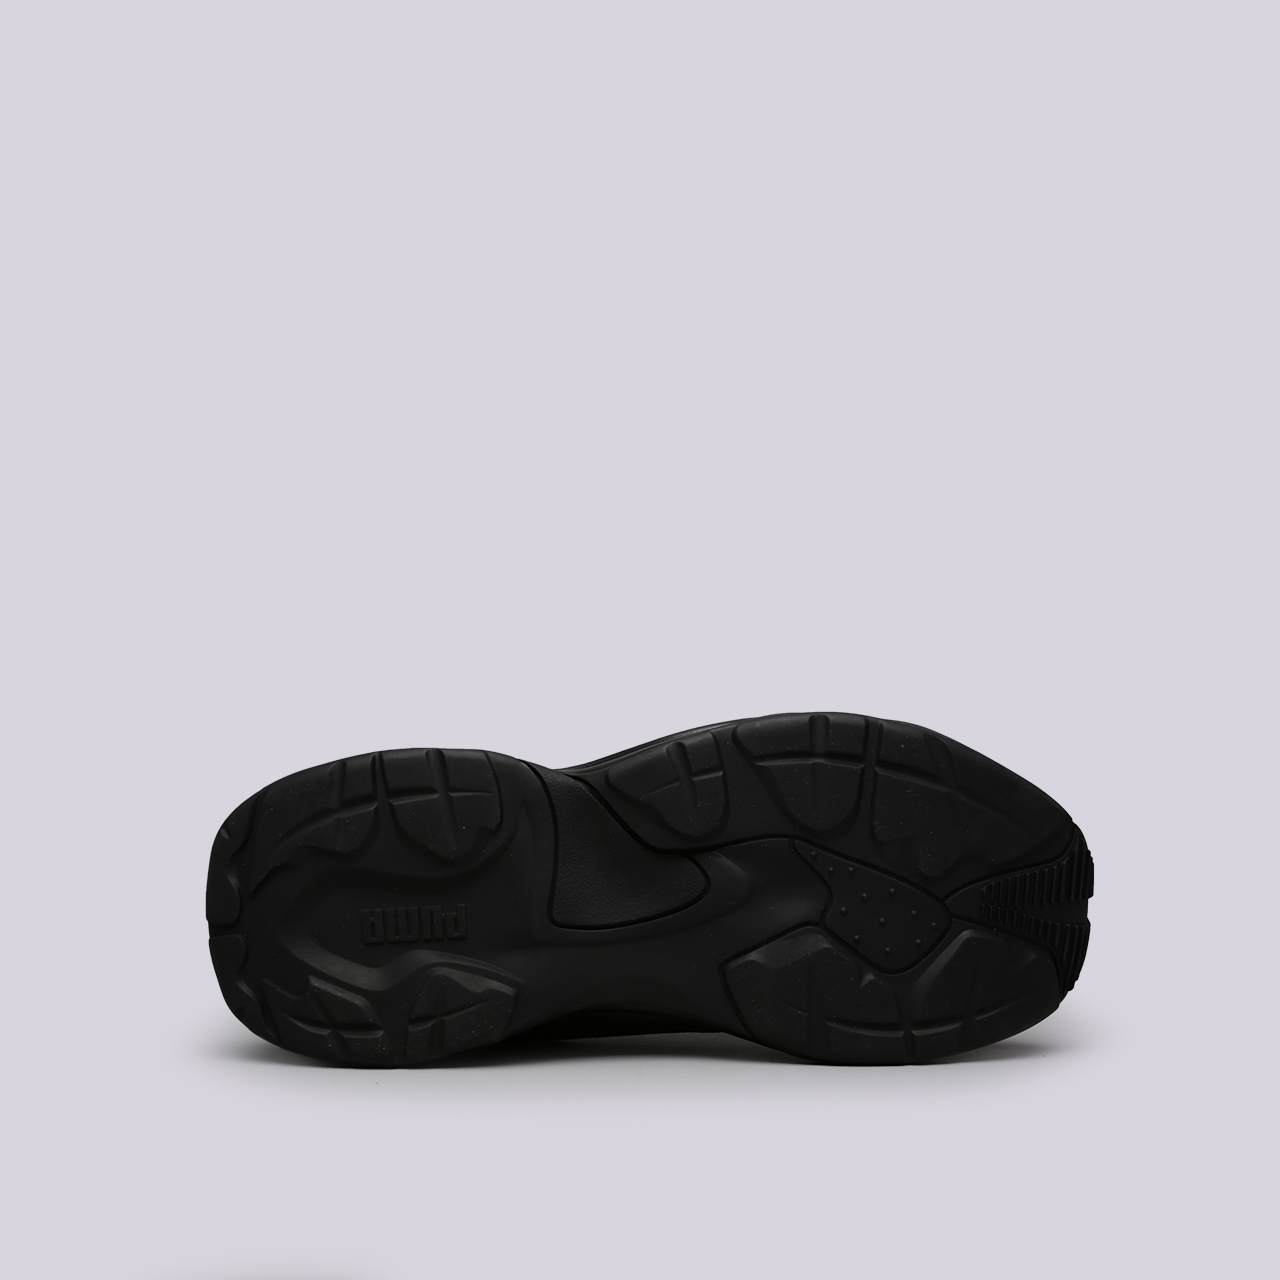 мужские черные кроссовки PUMA Thunder Desert 36799704 - цена, описание, фото 2